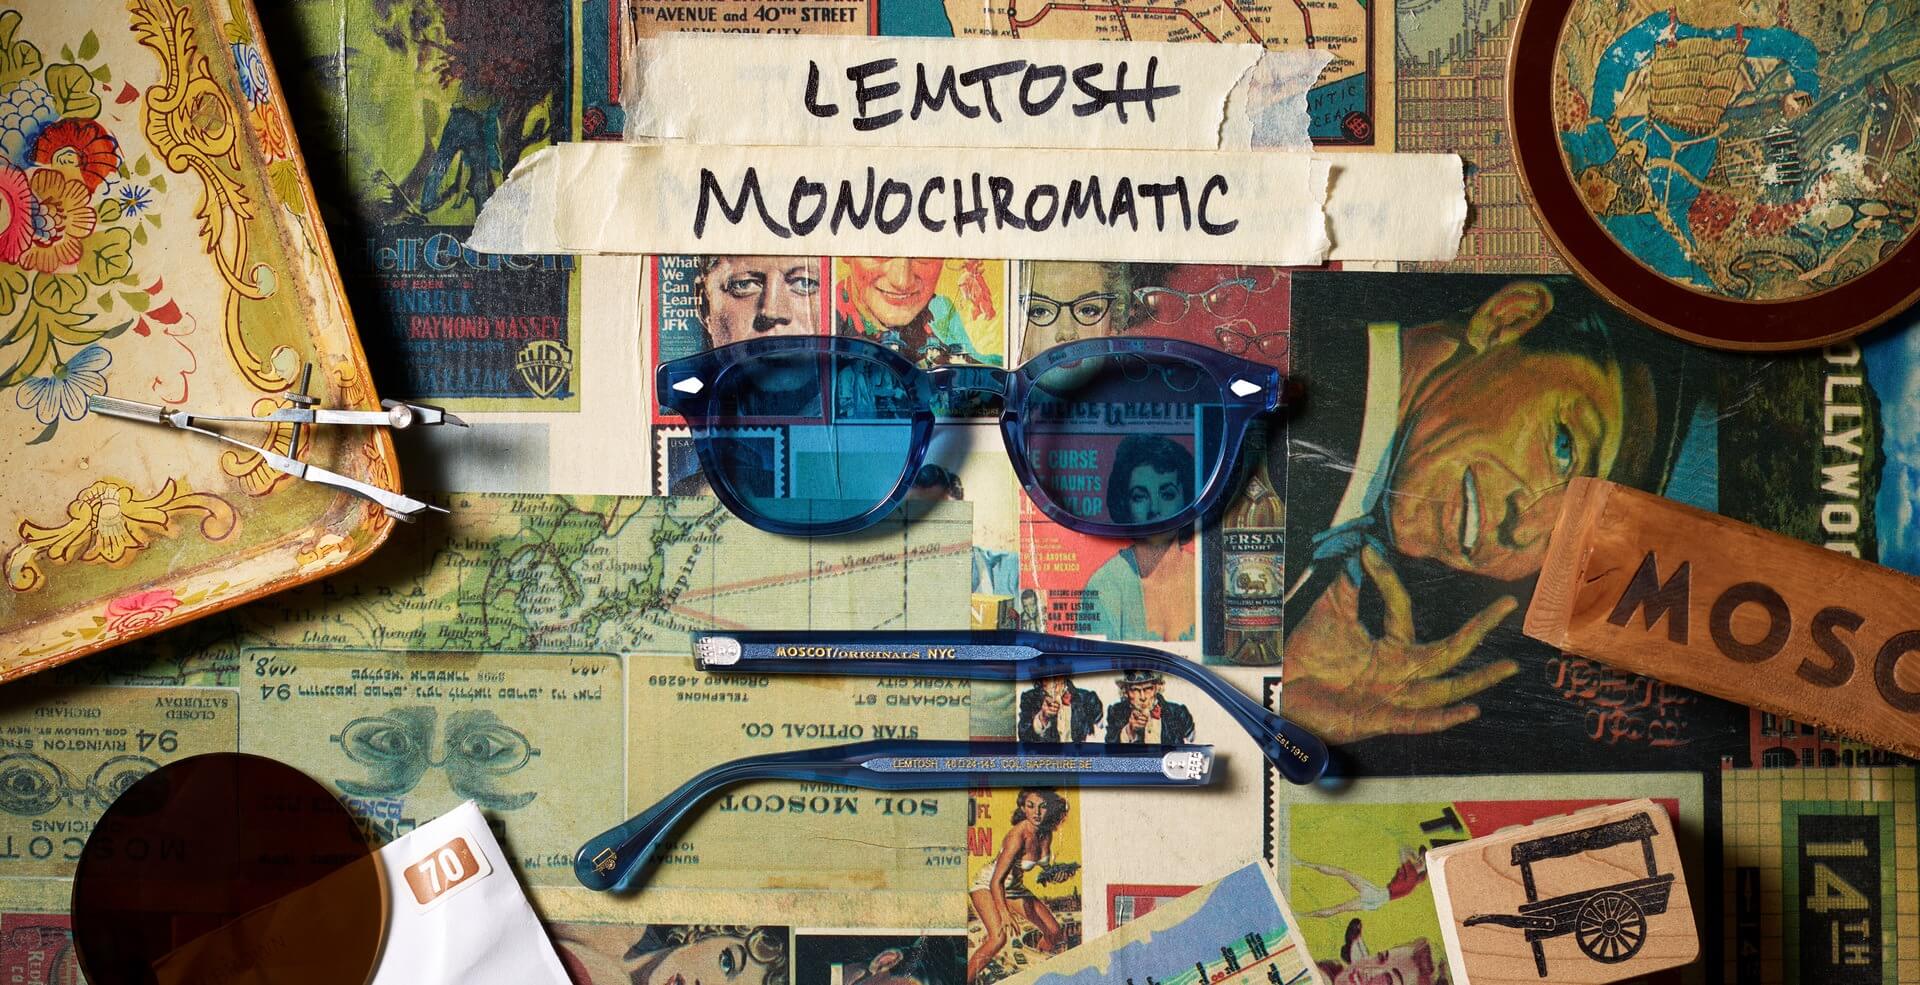 LEMTOSH MONOCHROME